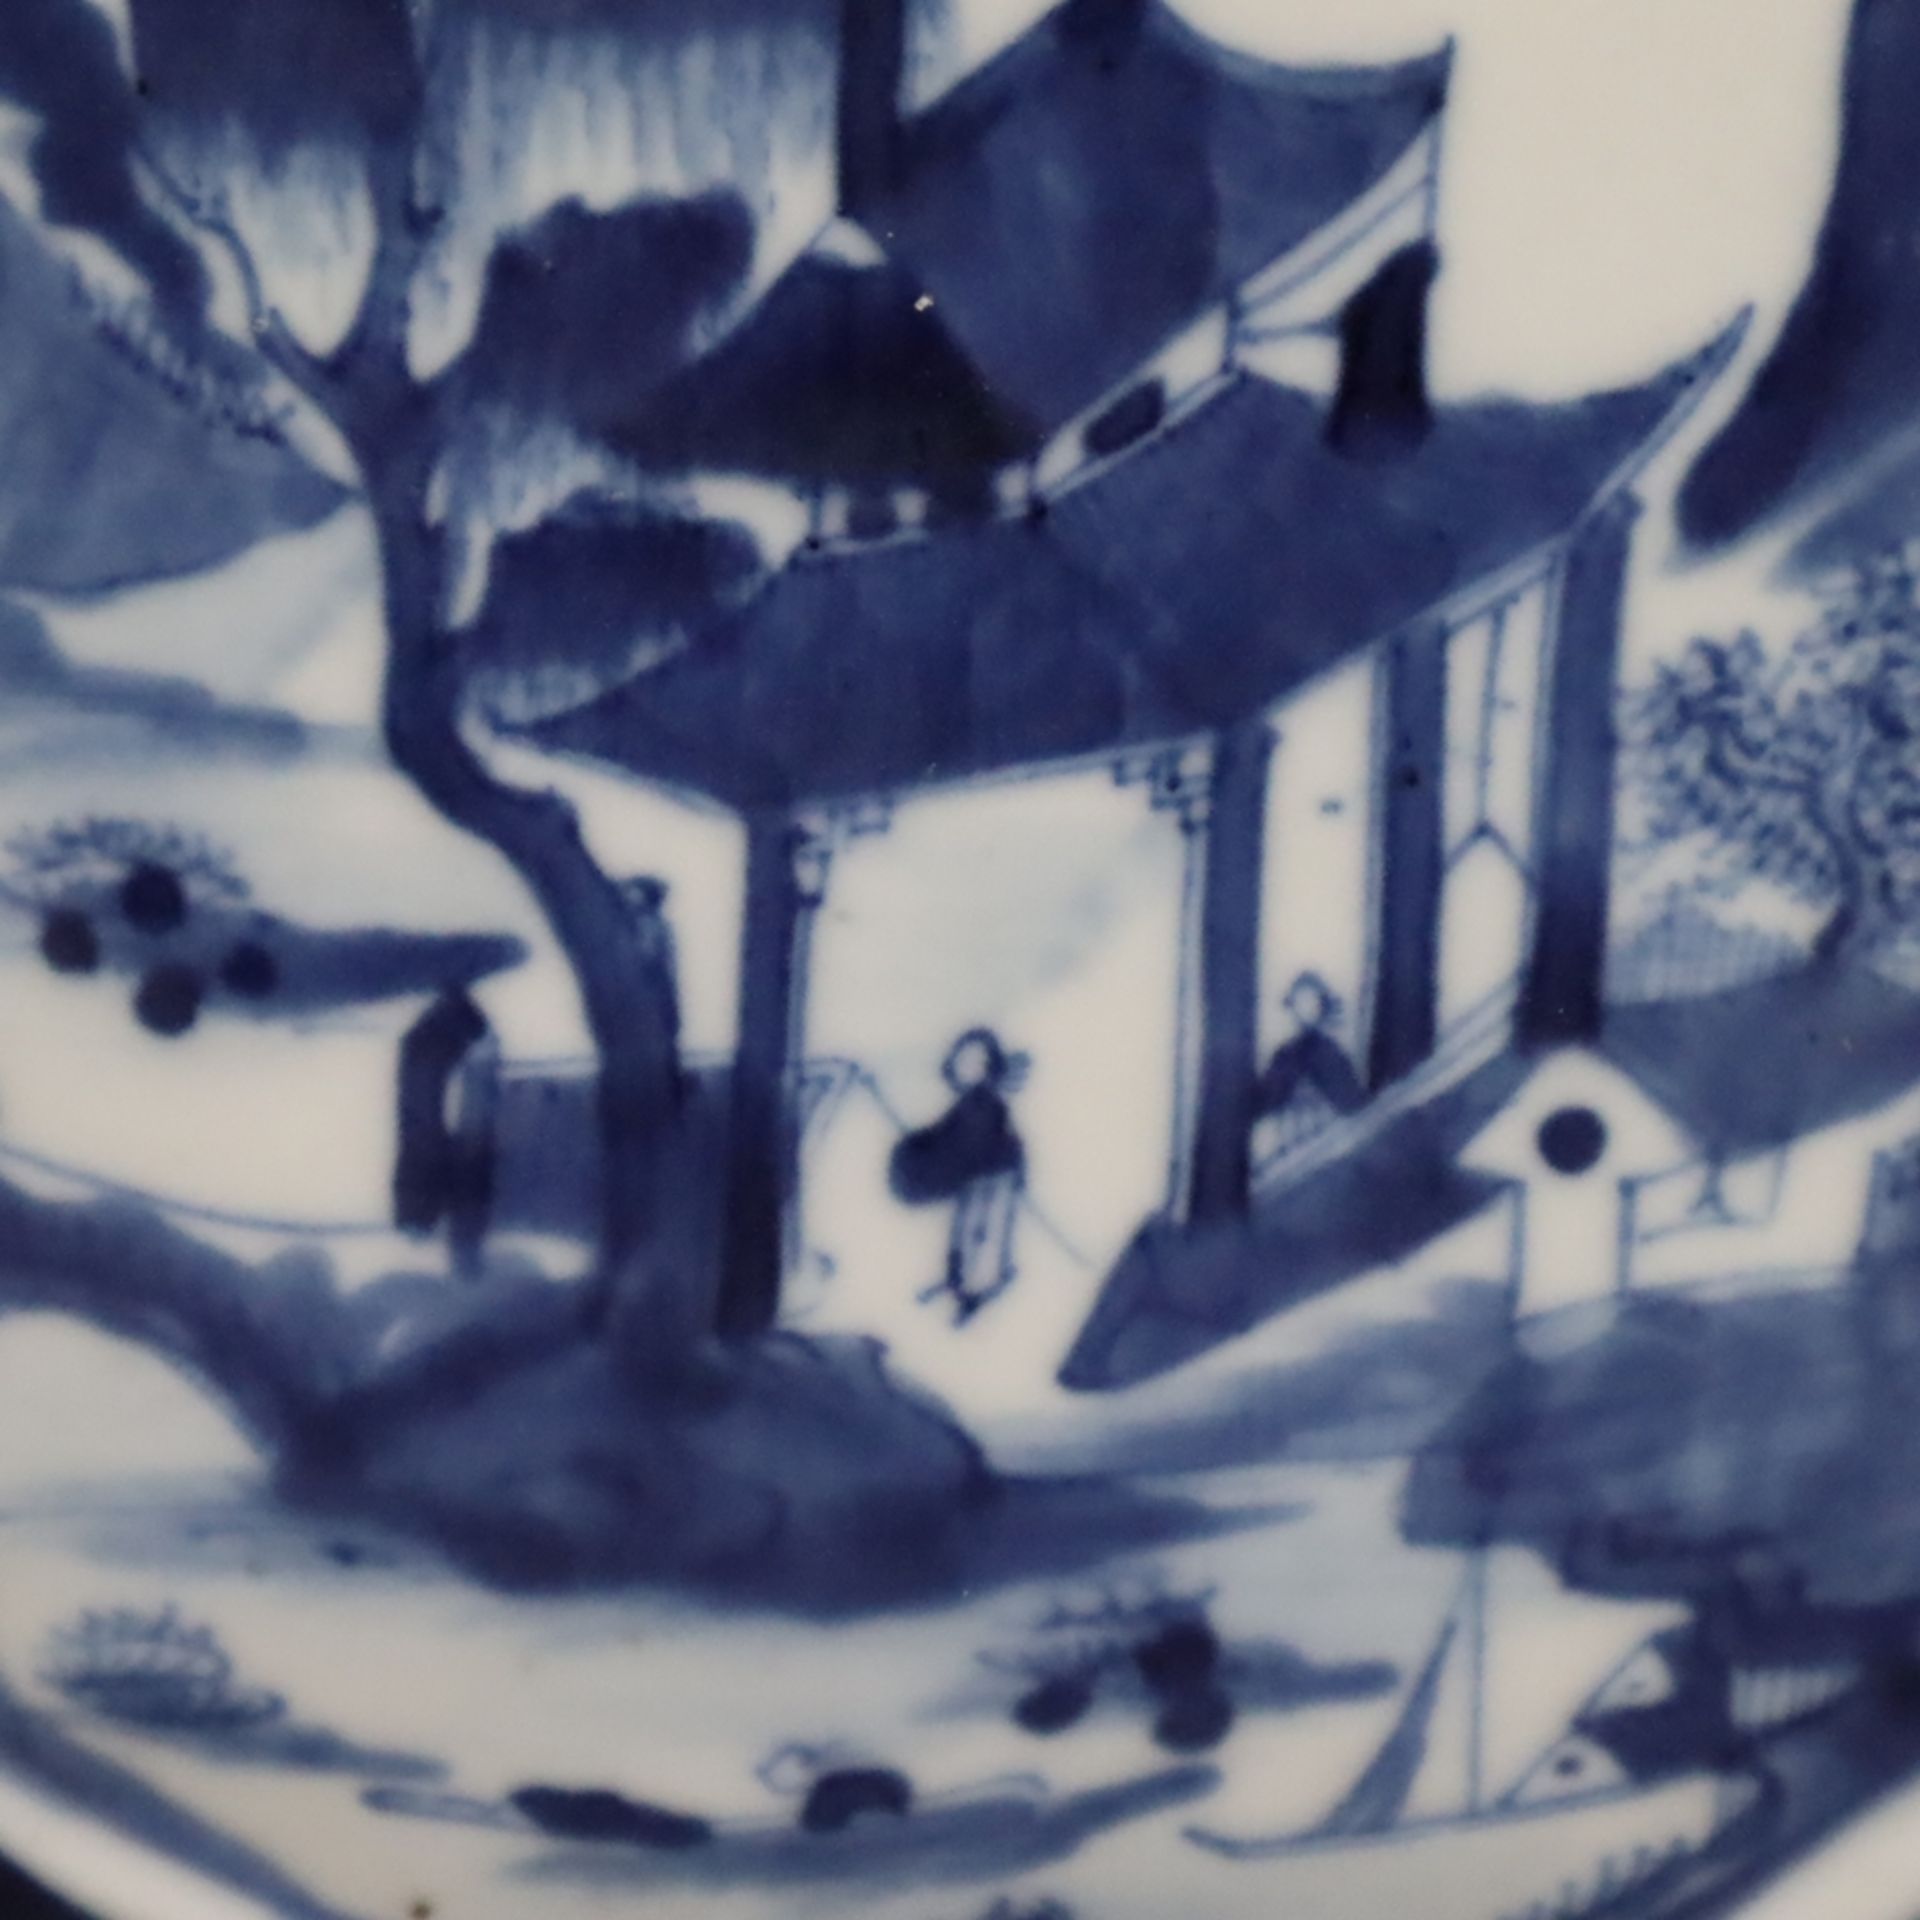 Mond-/Pilgerflasche - China, Ende 19.Jh., Porzellan mit Blaumalerei, Flaschenform mit Röhrenhals un - Bild 4 aus 11